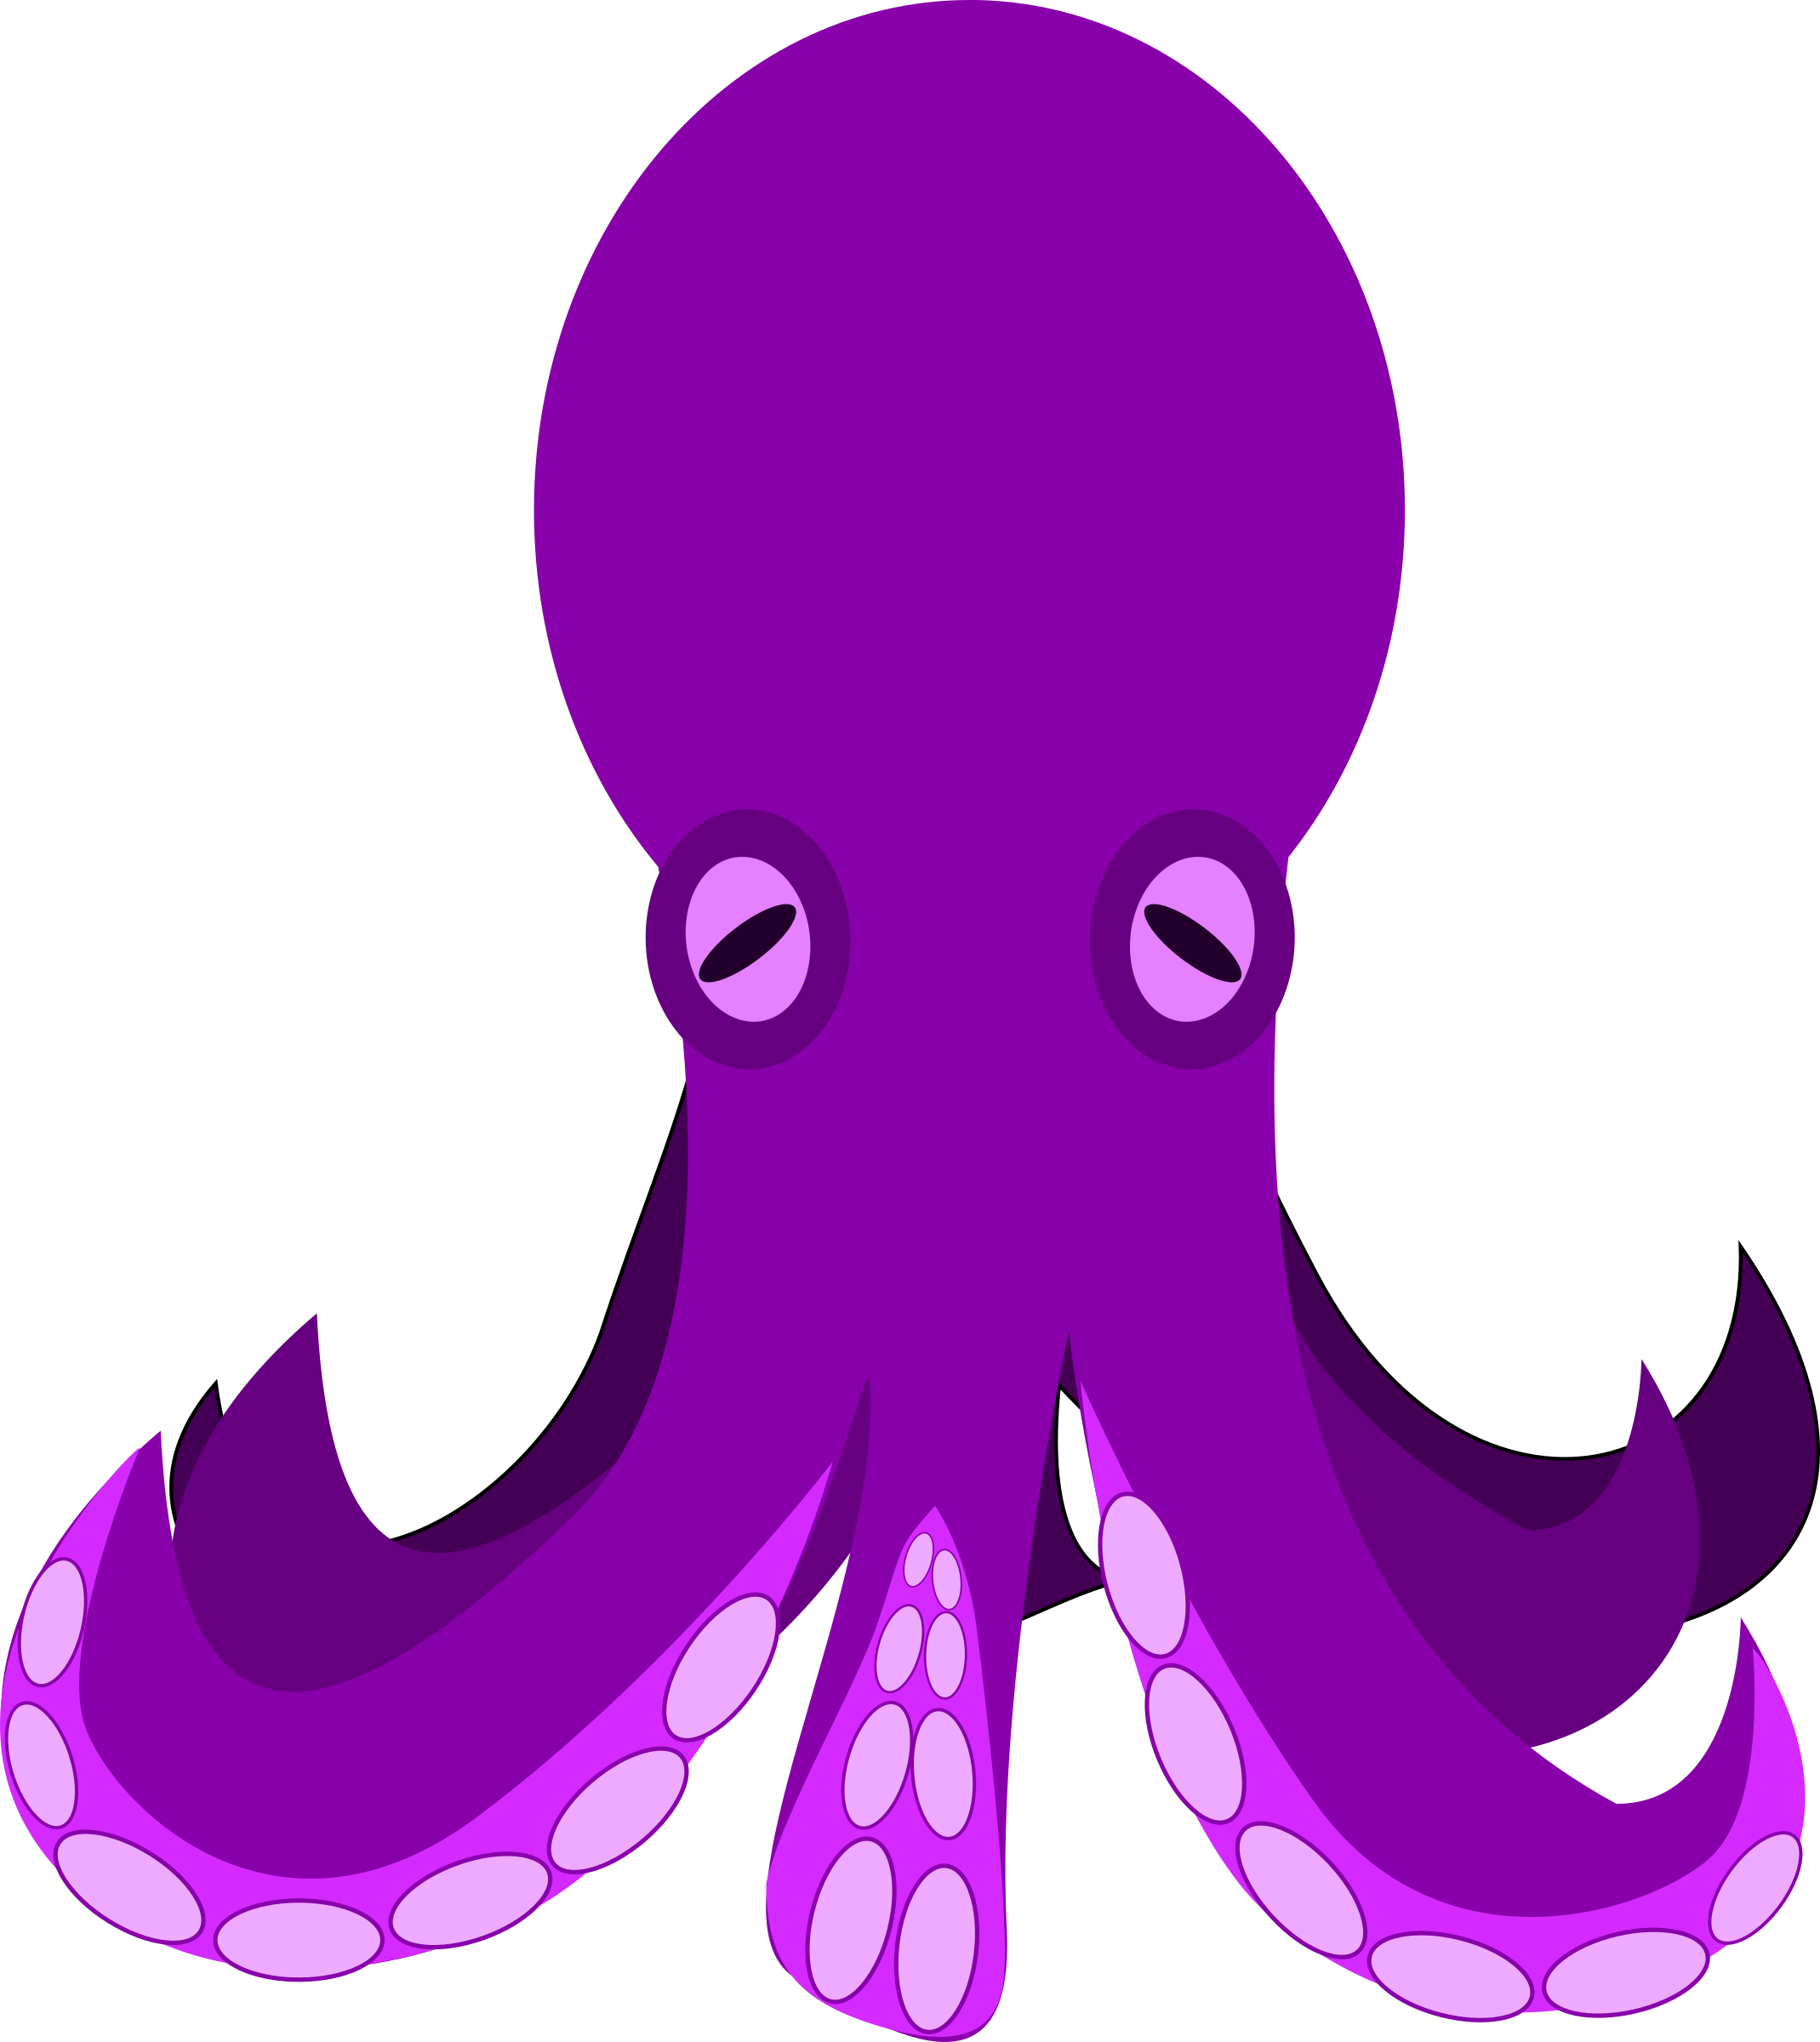 Big image png. Clipart octopus aquatic animal